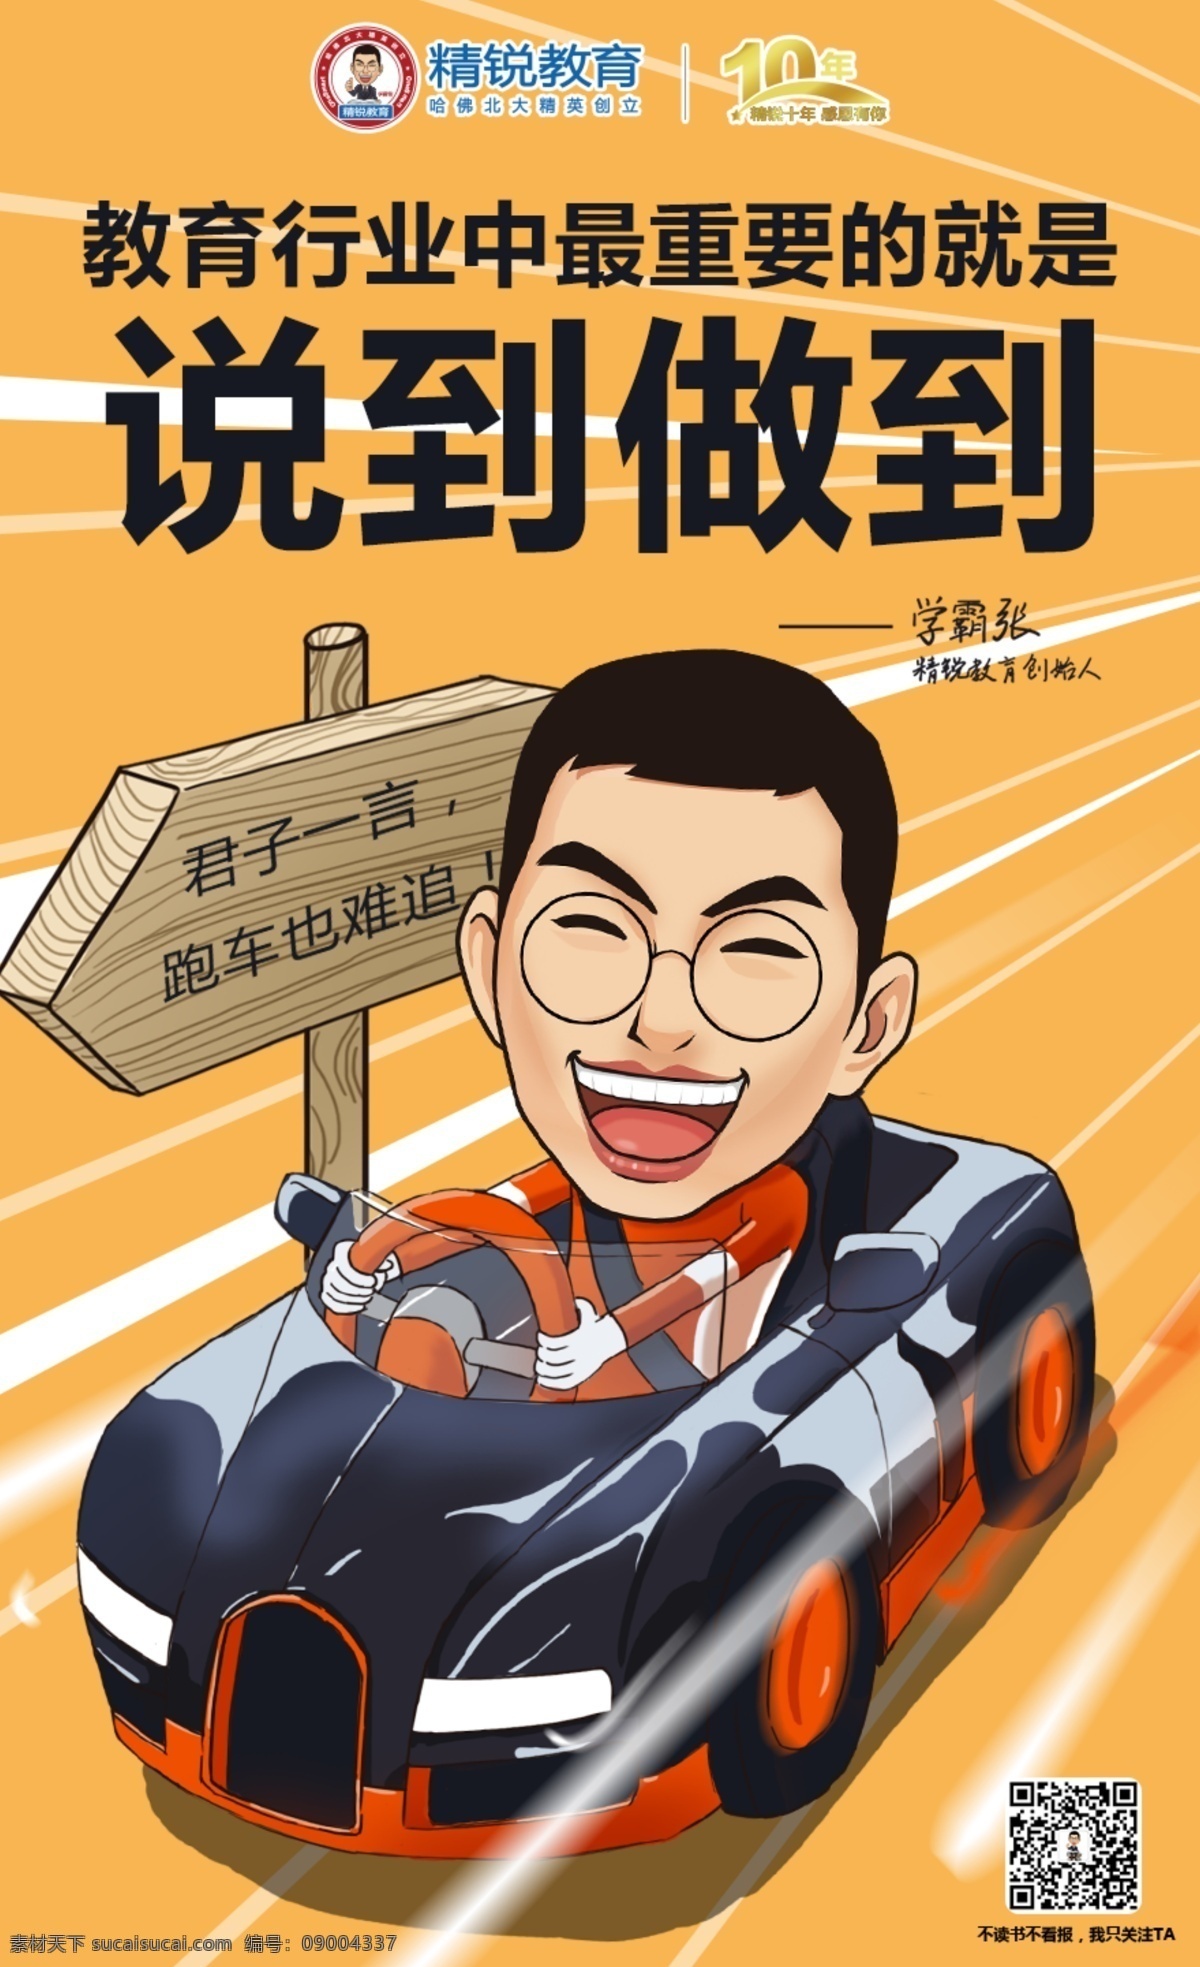 跑车 小汽车 赛车 海报 卡通 老师 电影 形象 动画 搞笑 手绘 插画 漫画 z慧学堂